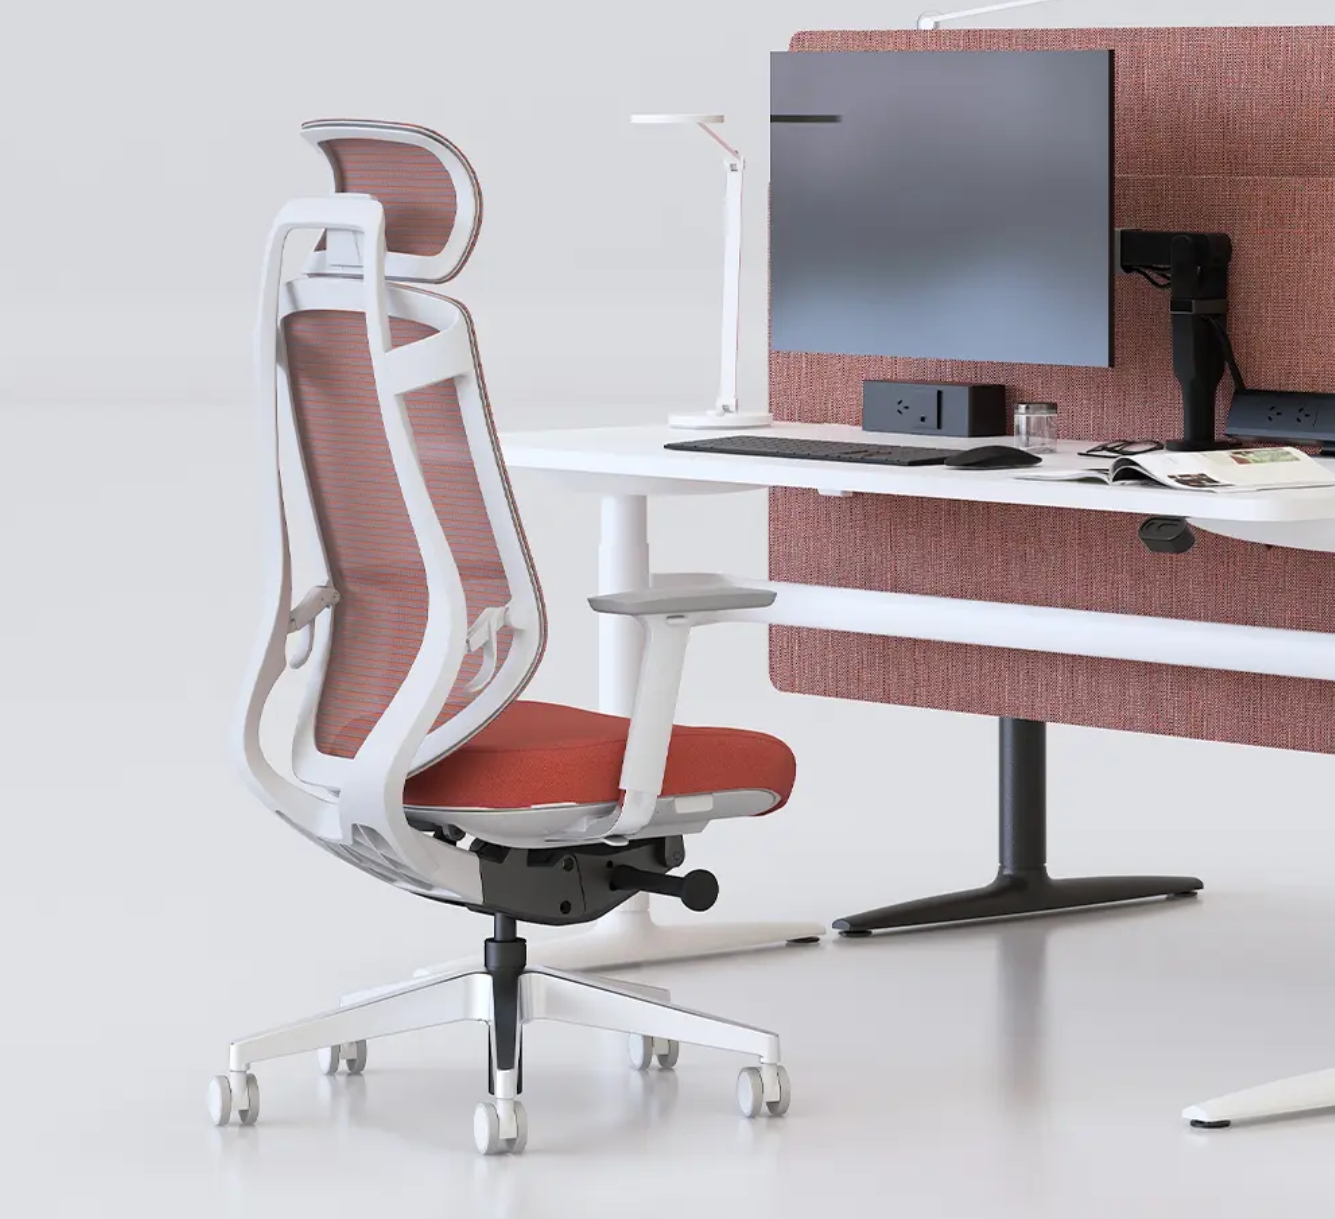 Guia abrangente para escolher, manter e compreender os benefícios dos fabricantes de cadeiras de escritório executivas